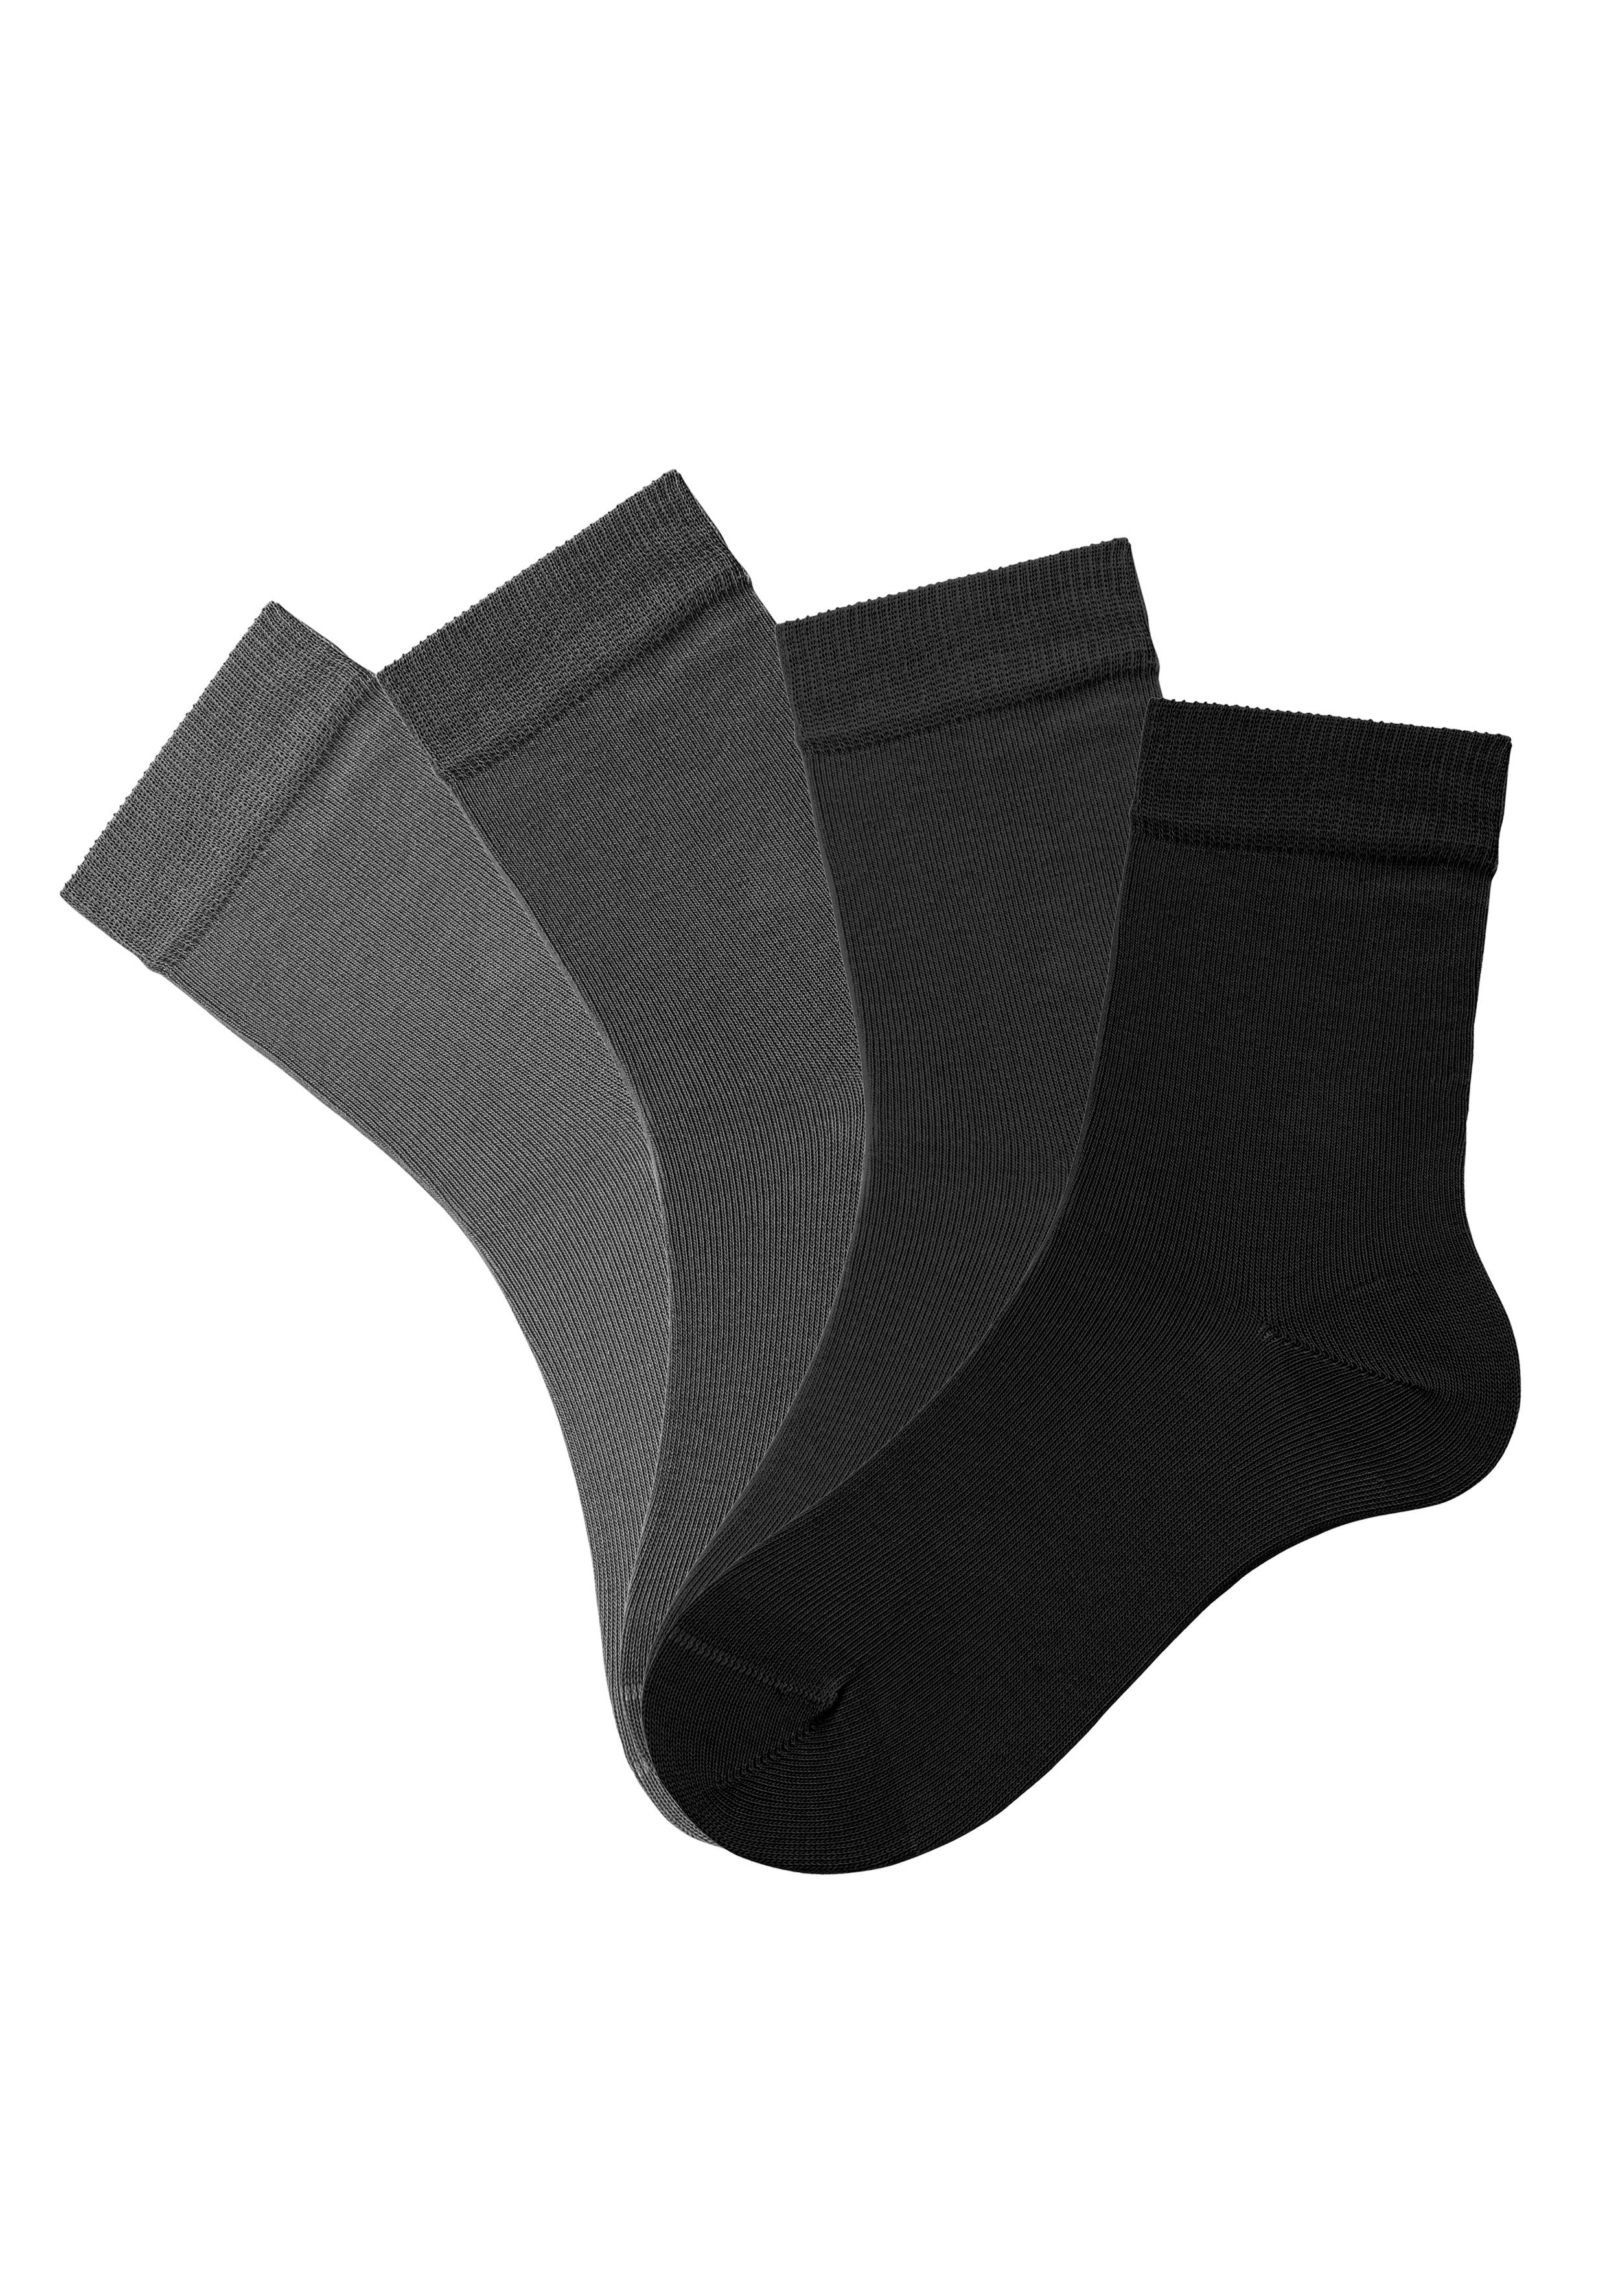 Farbzusammenstellungen Socken H.I.S 4-Paar) 4x (Set, unterschiedlichen grau-schwarz in